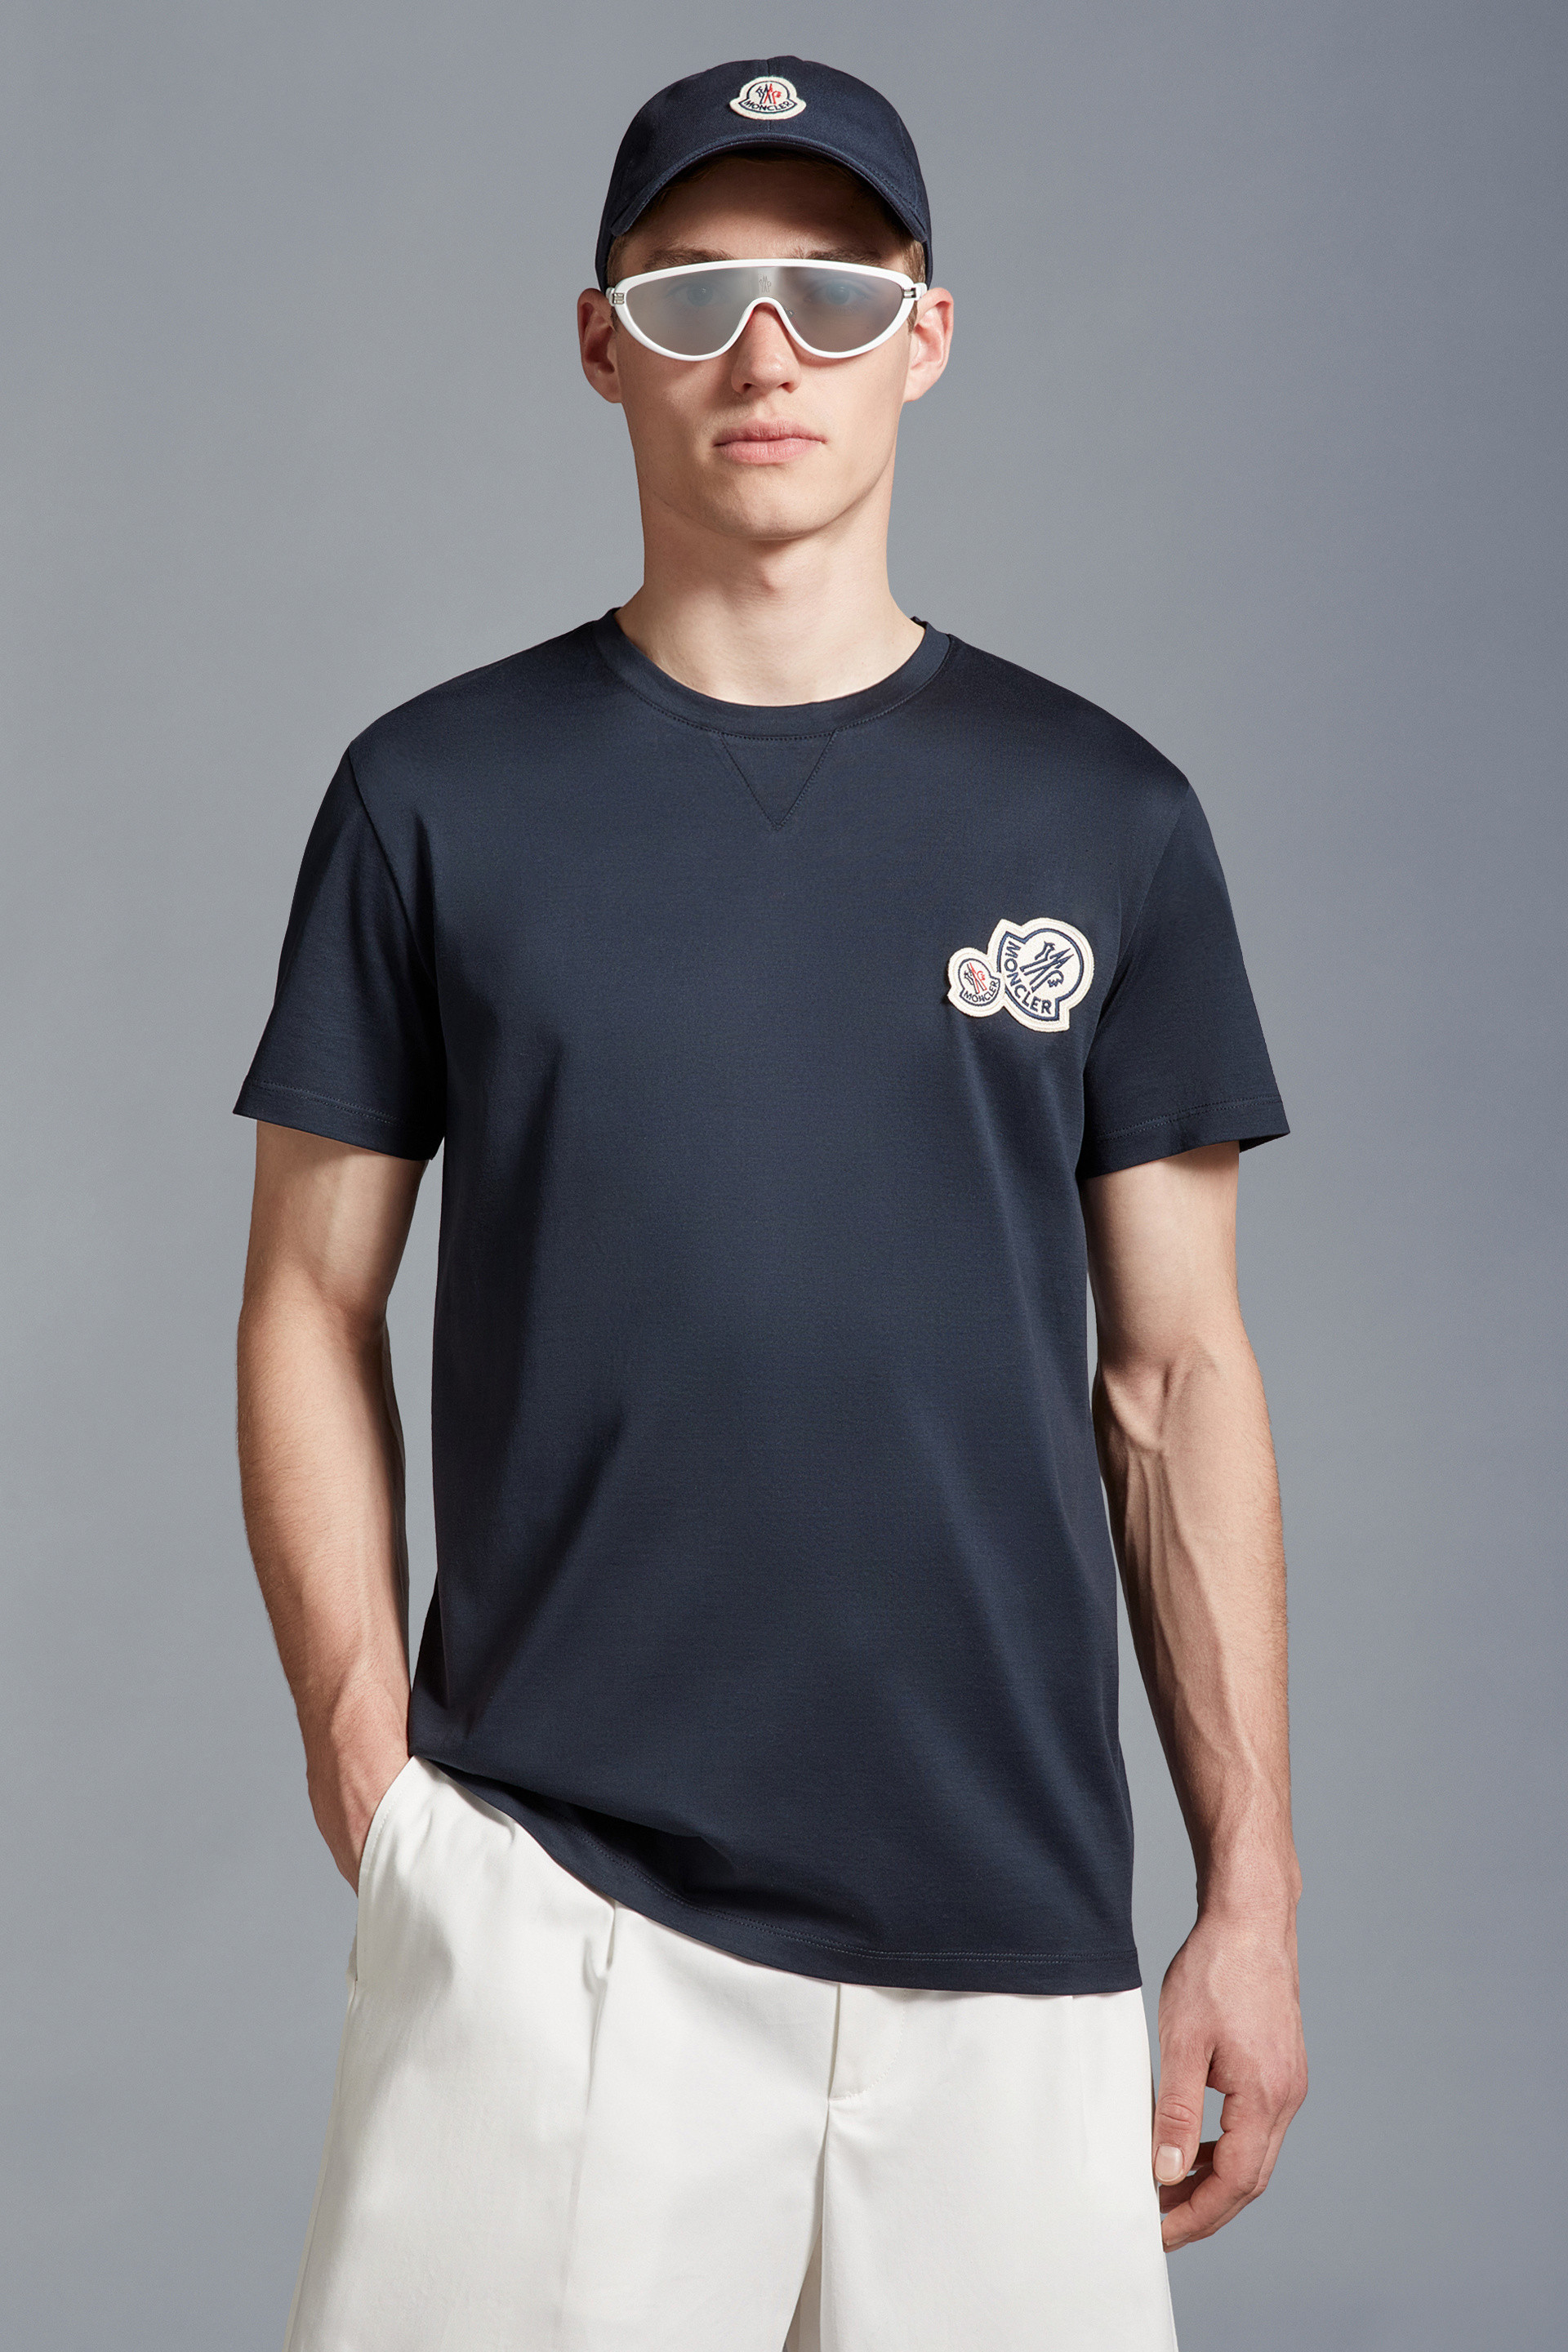 新品最新作 モンクレールのTシャツ OLZ6Y-m75536412256 actualizate.ar